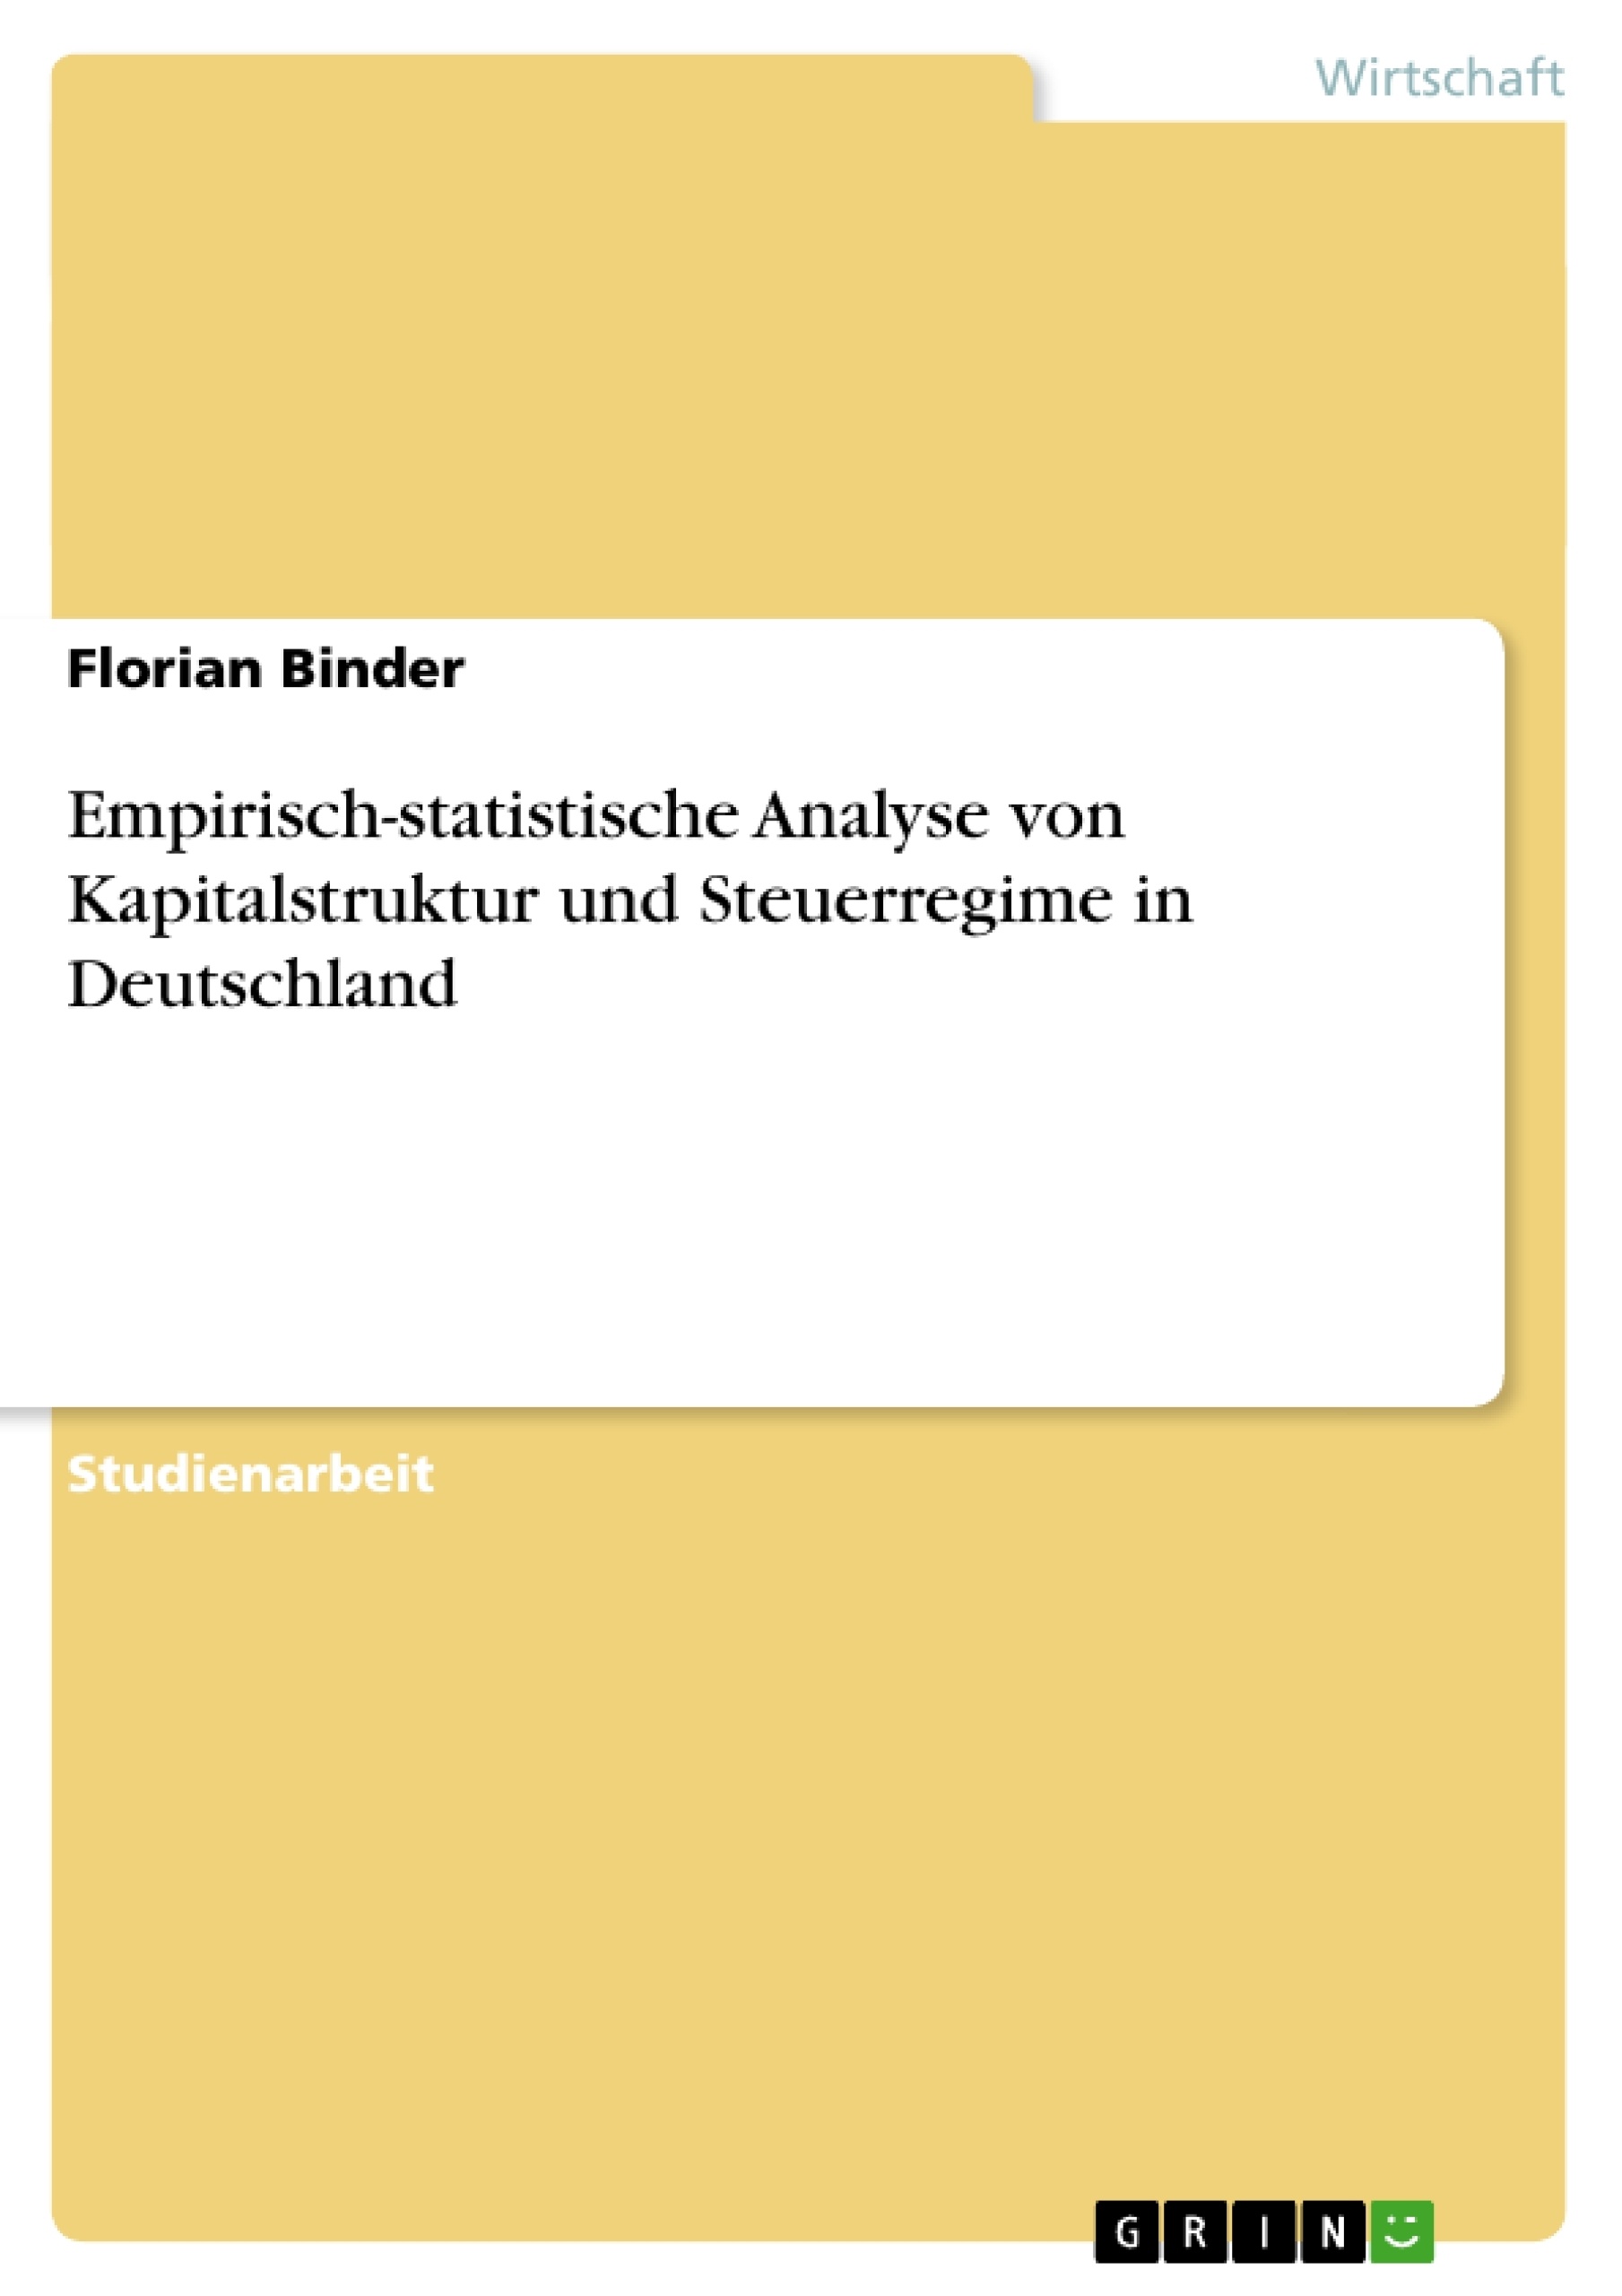 Title: Empirisch-statistische Analyse von Kapitalstruktur und Steuerregime in Deutschland